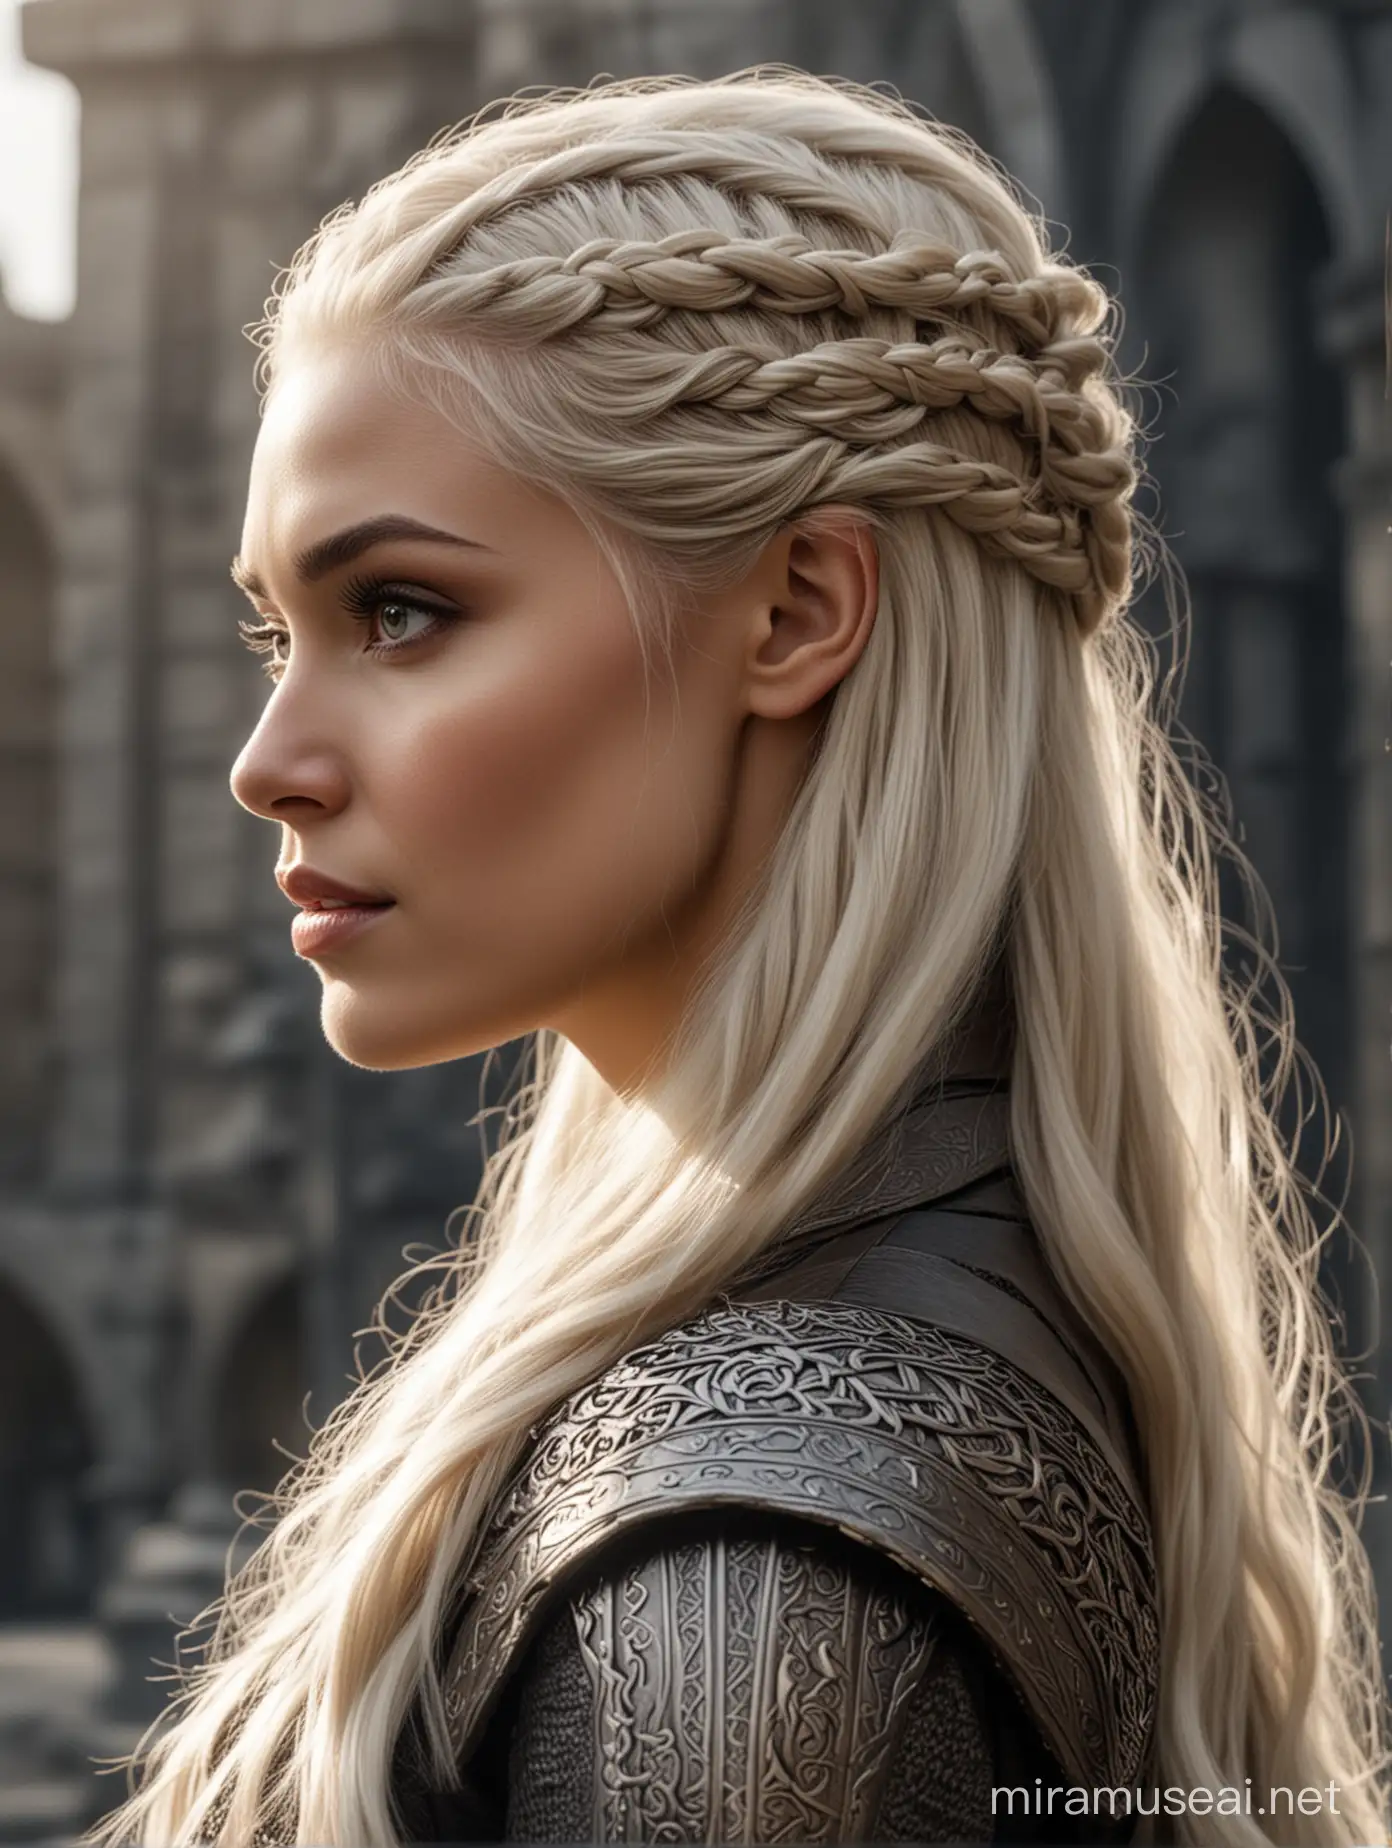 Valyrian woman, valyrian style hair, 